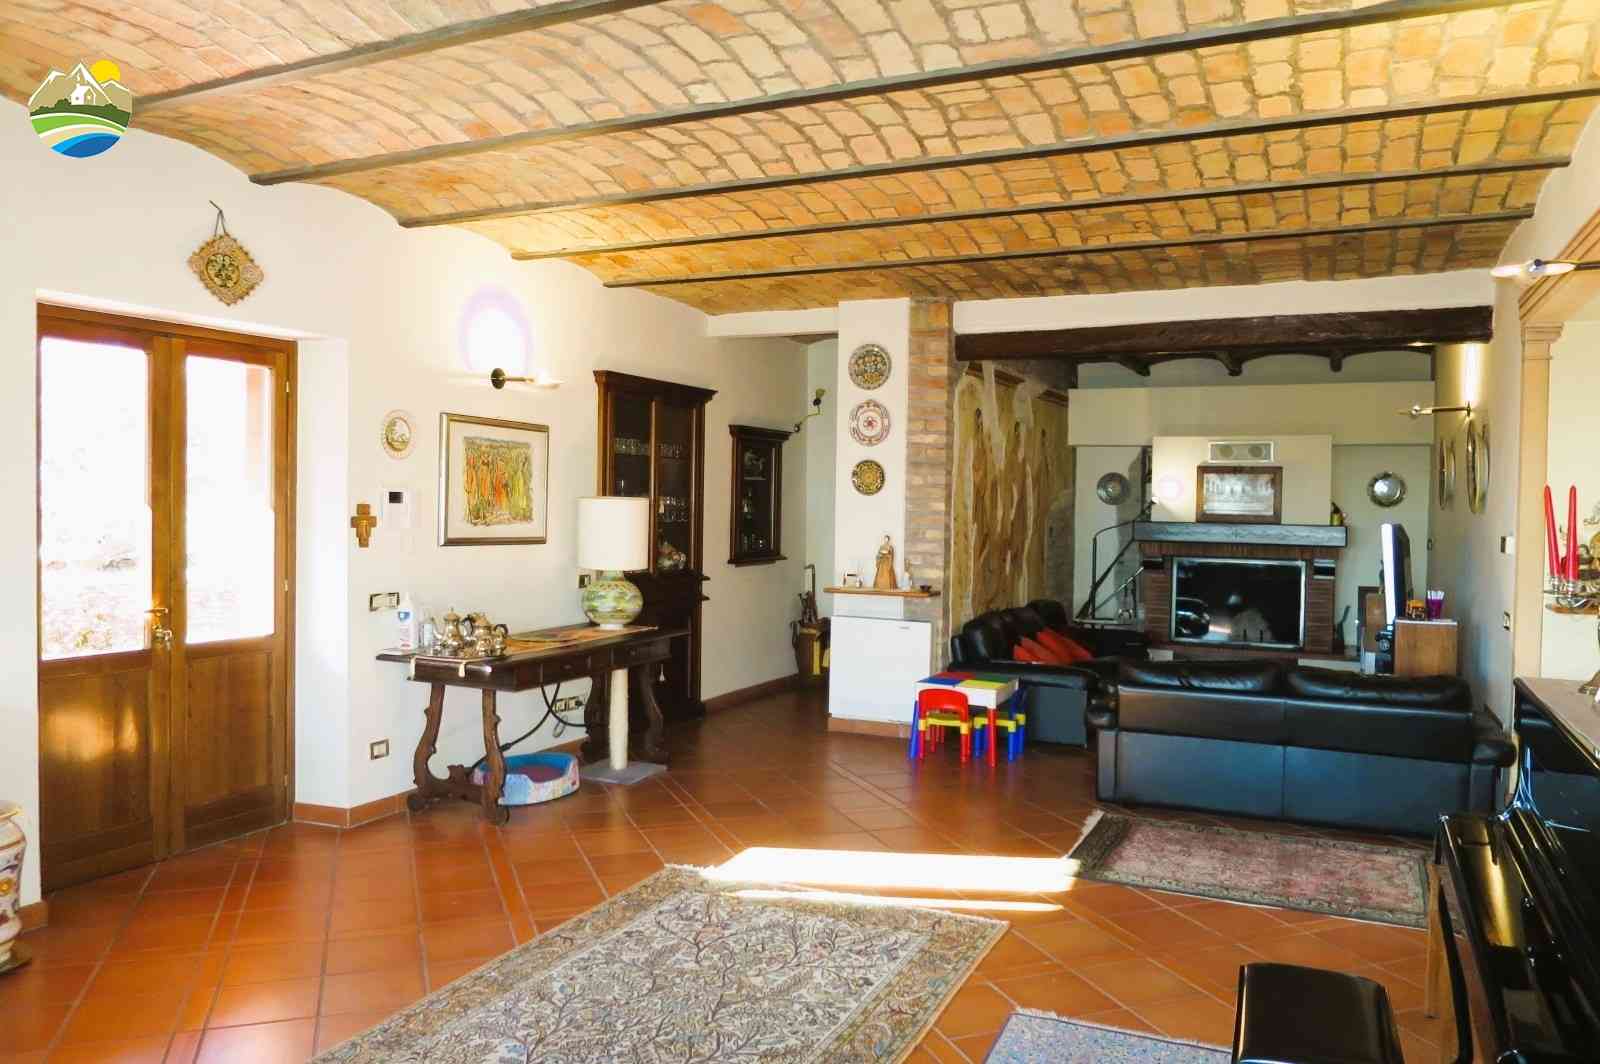 Country Houses Country Houses for sale Bellante (TE), Casale La Vignola - Bellante - EUR 524.401 720